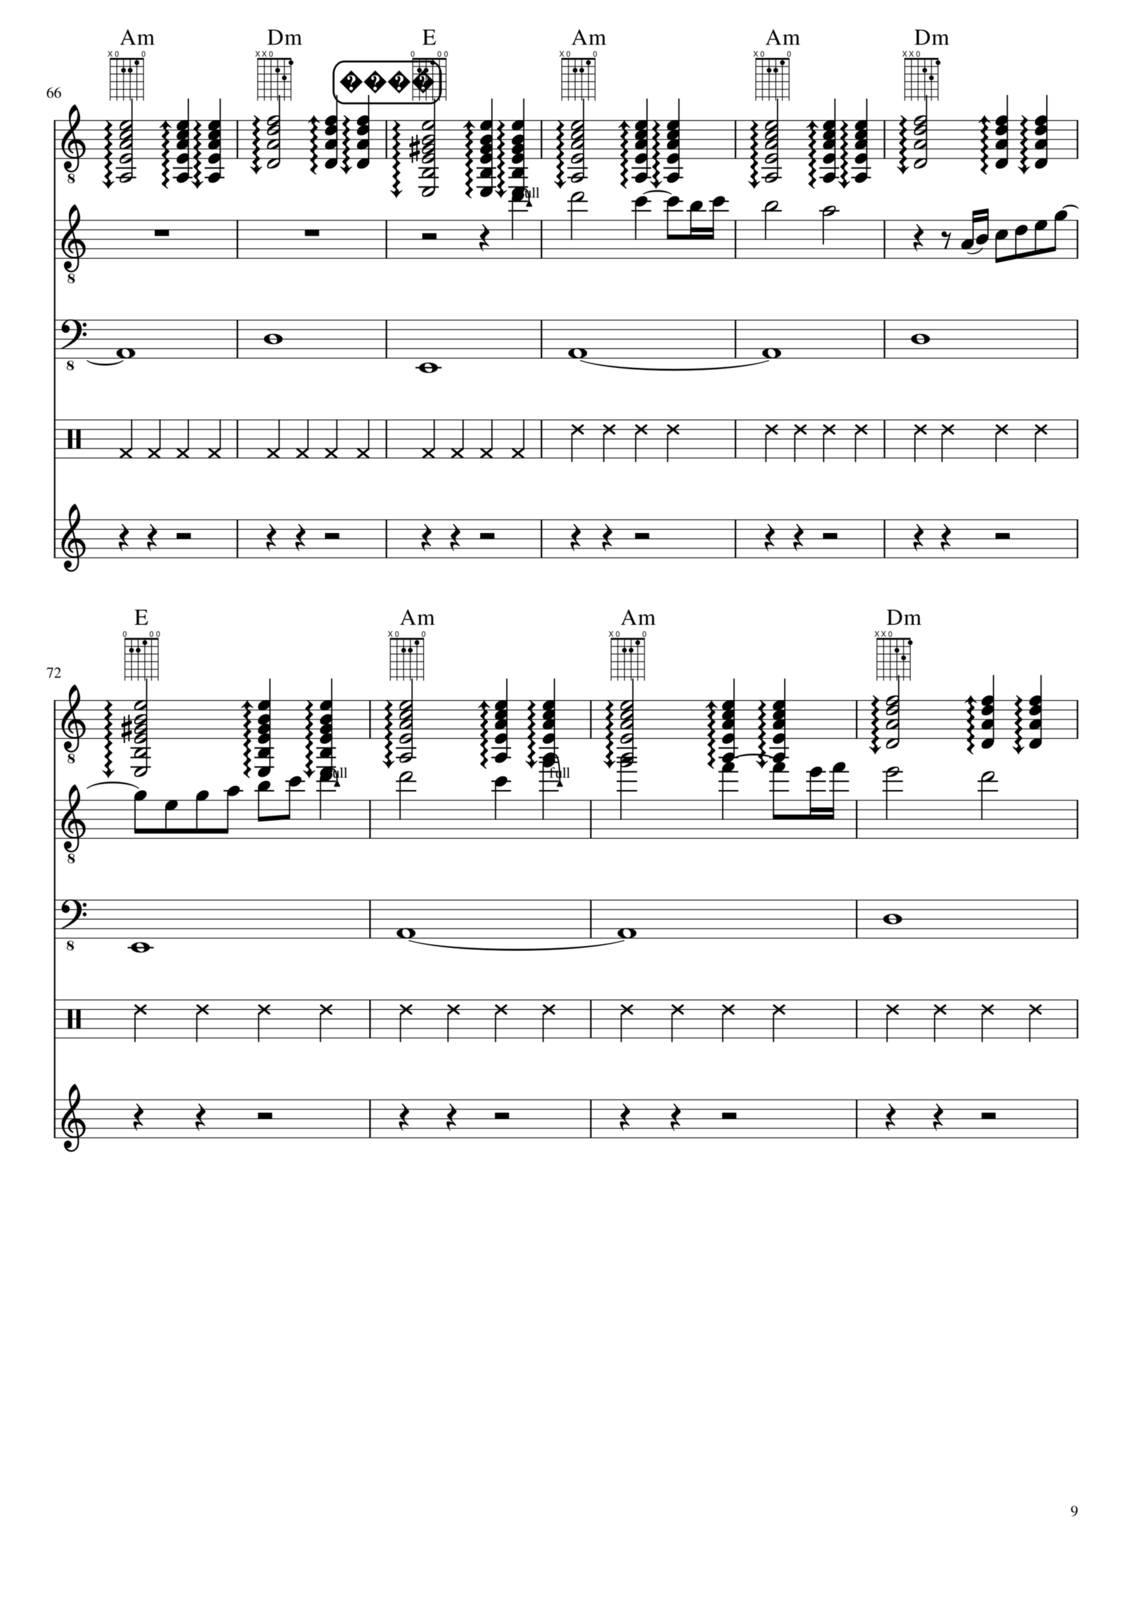 Prervannaya lyubov ili arbuznaya korka slide, Image 9